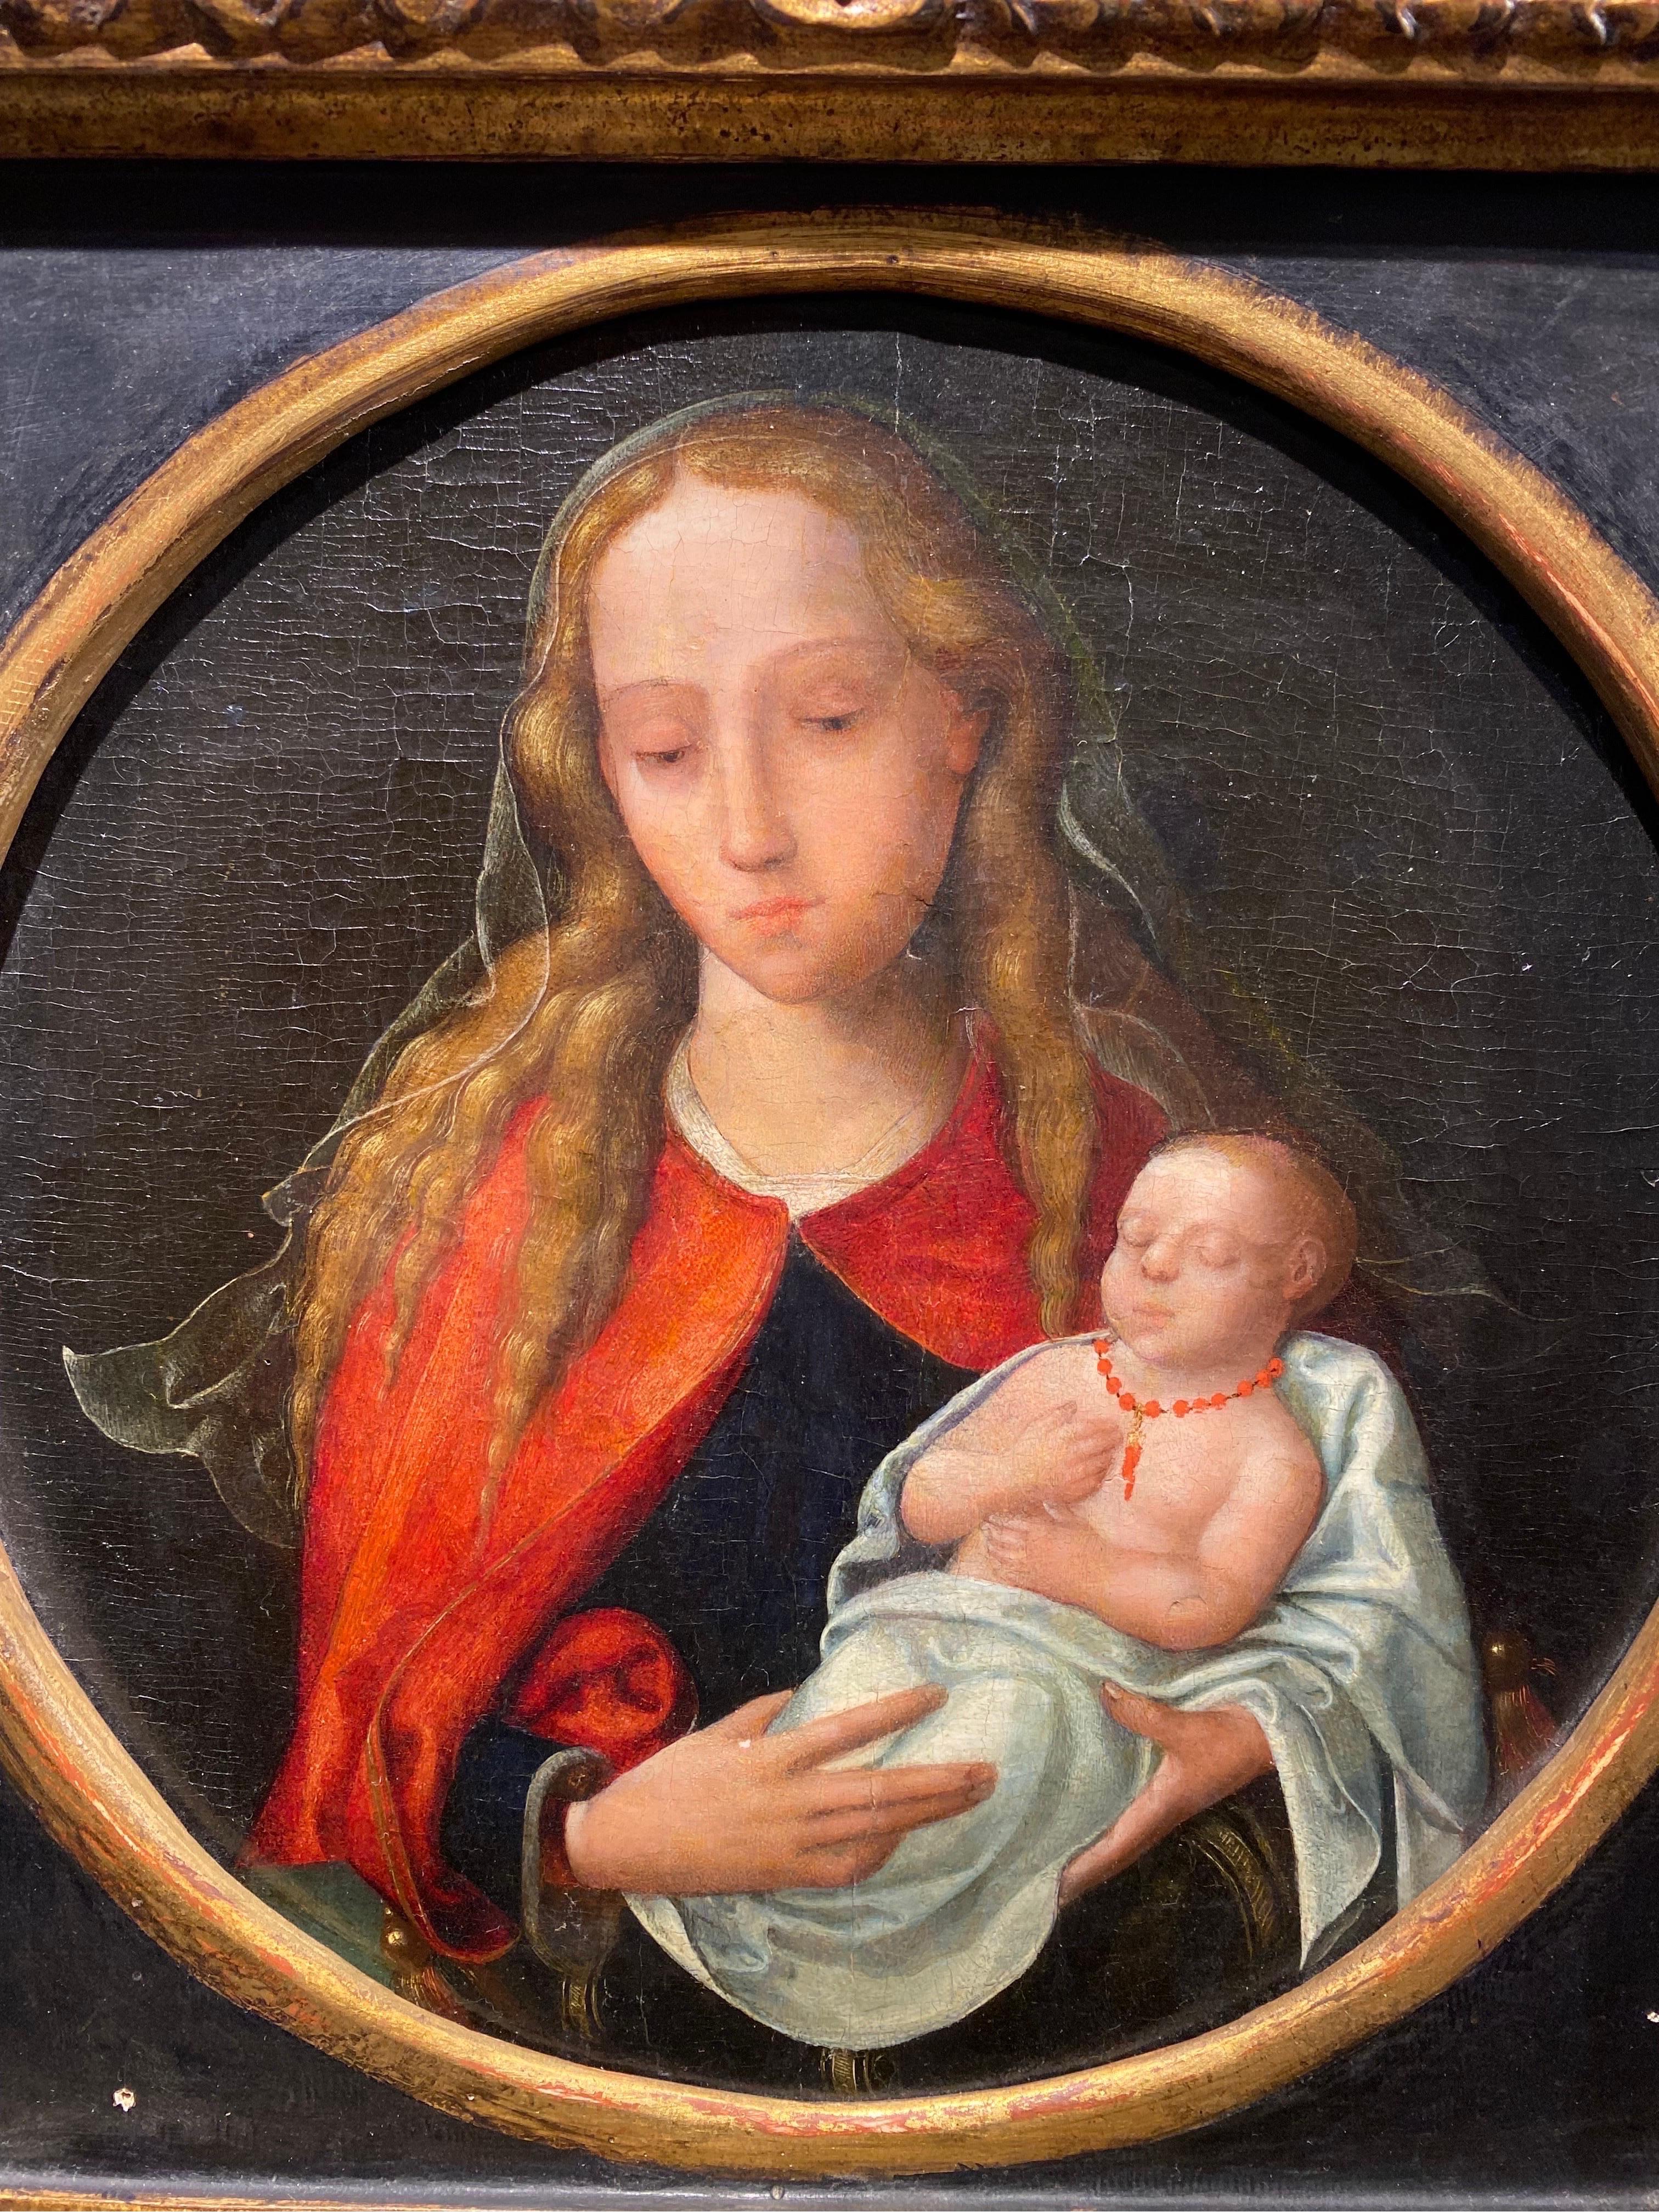 16 century
Virgin and child - Painting by Maestro de las medias figuras